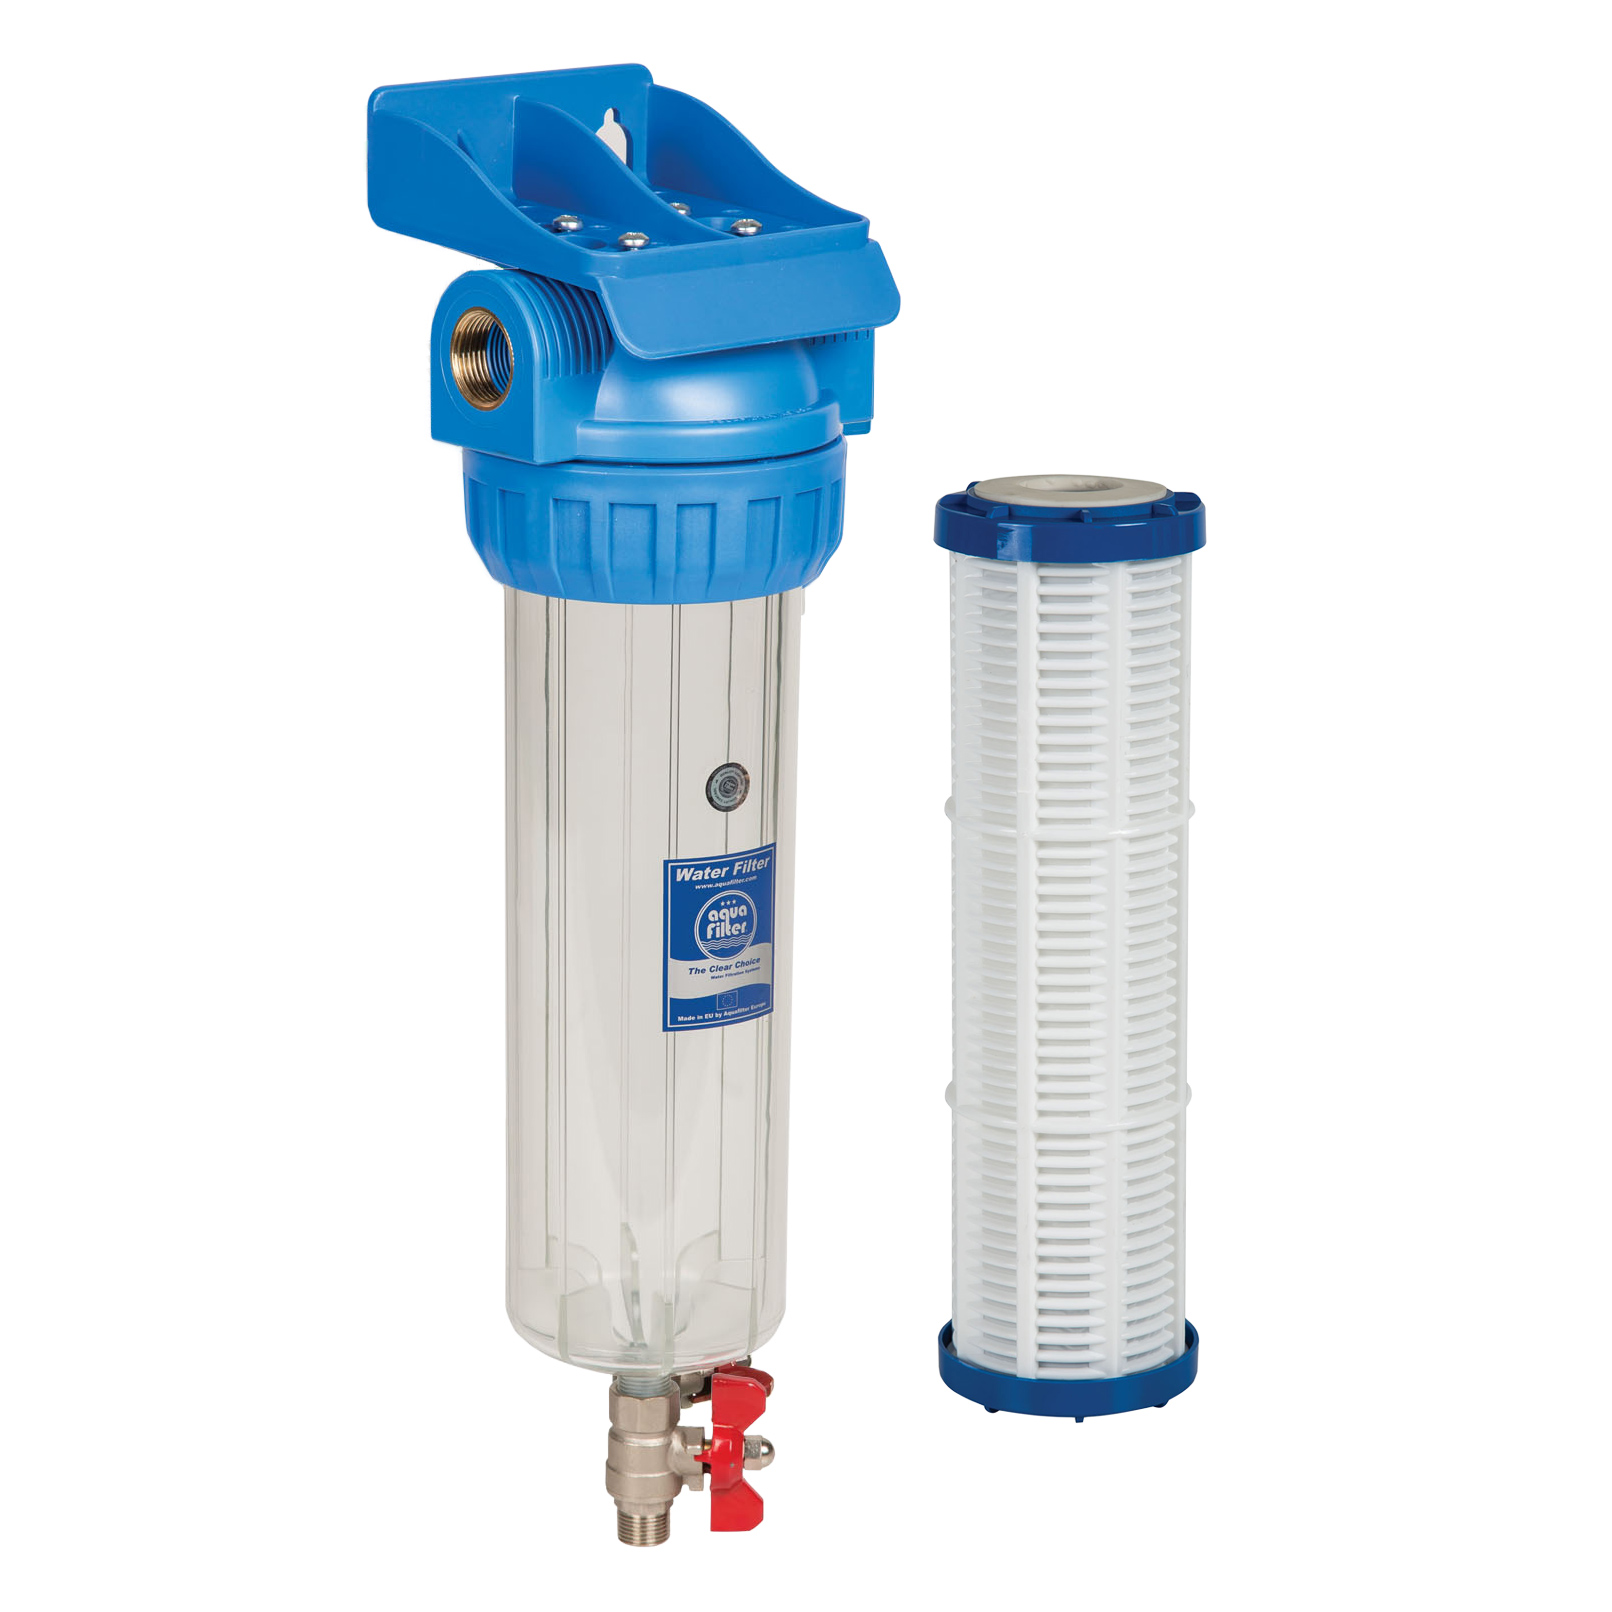 Фильтры для воды рязань. 281750-20 Корпус водяного фильтра 95 body Water Filter Johnston Sweepers. Bb20 корпус фильтра со сливом. Водяной фильтр 950 WTS. Магистральный фильтр со сливным краном.